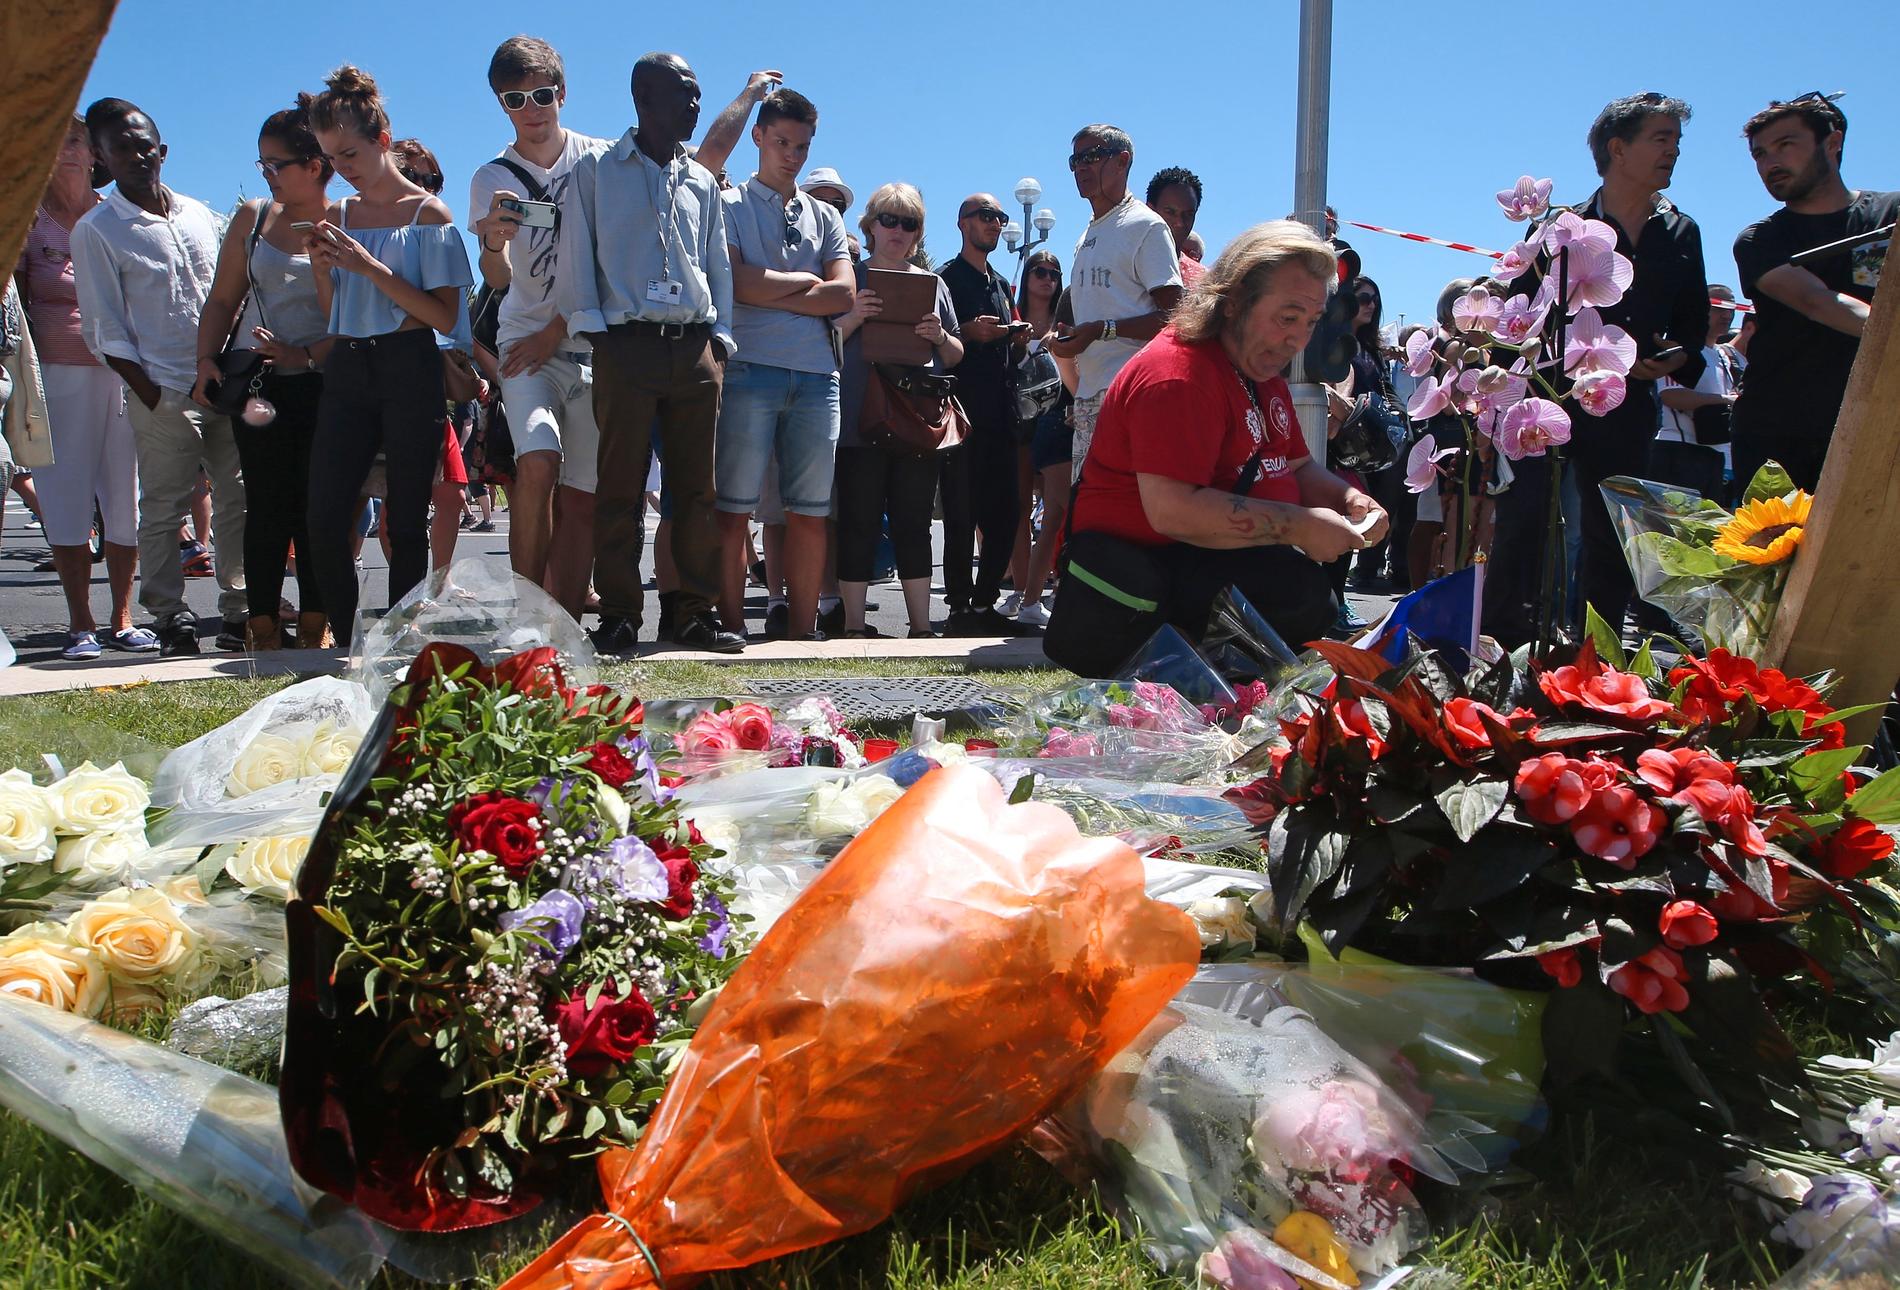 Tre dagars landssorg. Det var under Frankrikes nationaldagsfirande på strandpromenaden i Nice som gärningsmannen körde rakt in i folksamlingen. Minst 84 personer har dött.